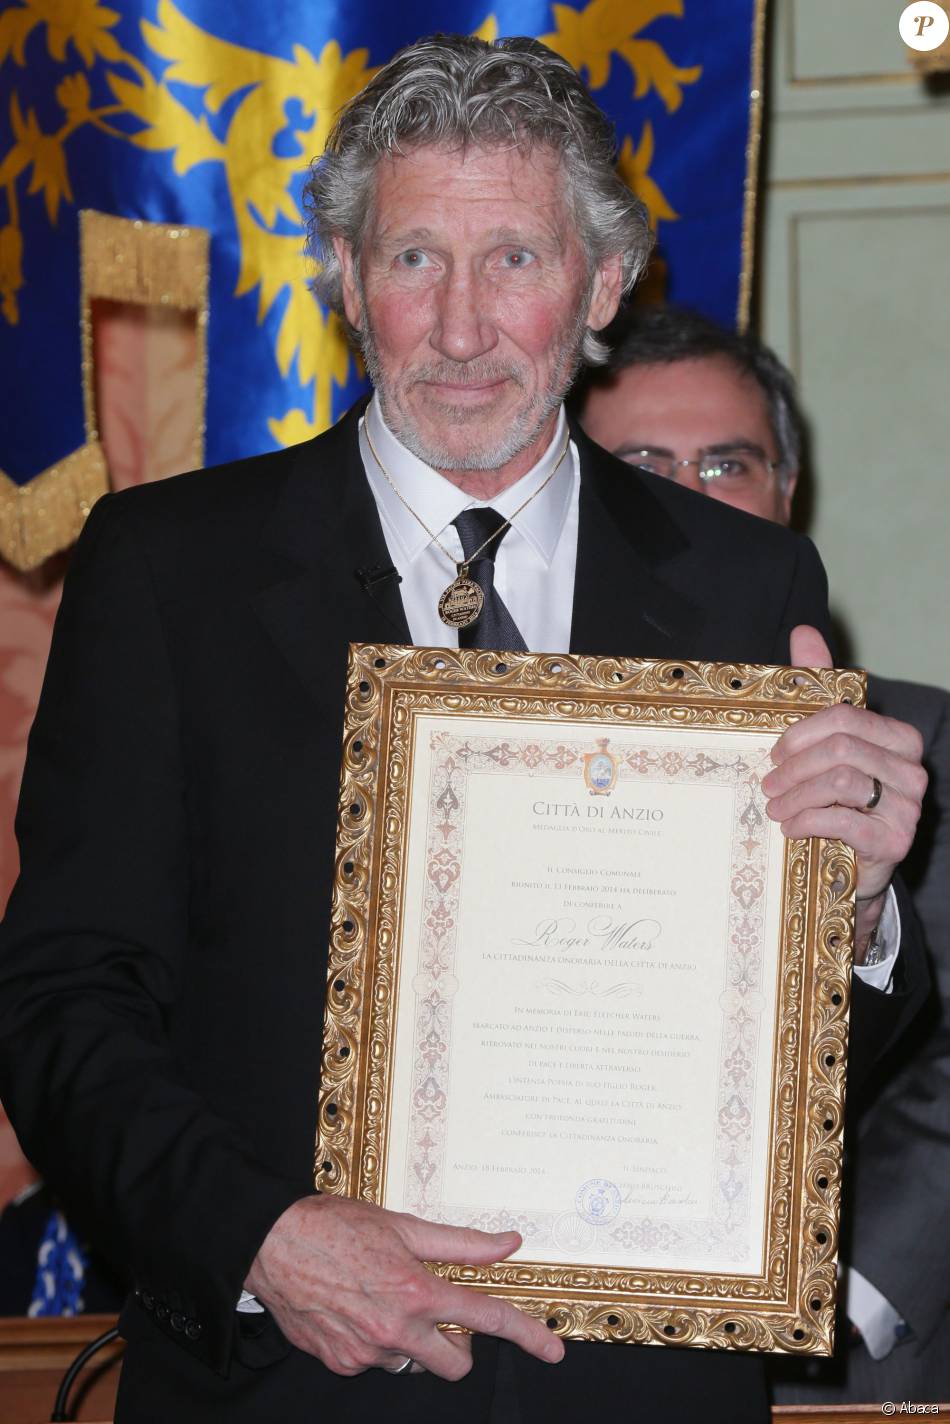 Le rockeur Roger Waters de Pink Floyd est fait citoyen d&#039;honneur d&#039;Anzio en Italie, le 18 février 2014, par le maire Luciano Bruschini. Il vient inaugurer un monument consacré à son père Eric Fletcher Waters, le 18 février 2014, soit 70 ans après sa mort durant la Seconde Guerre mondiale.